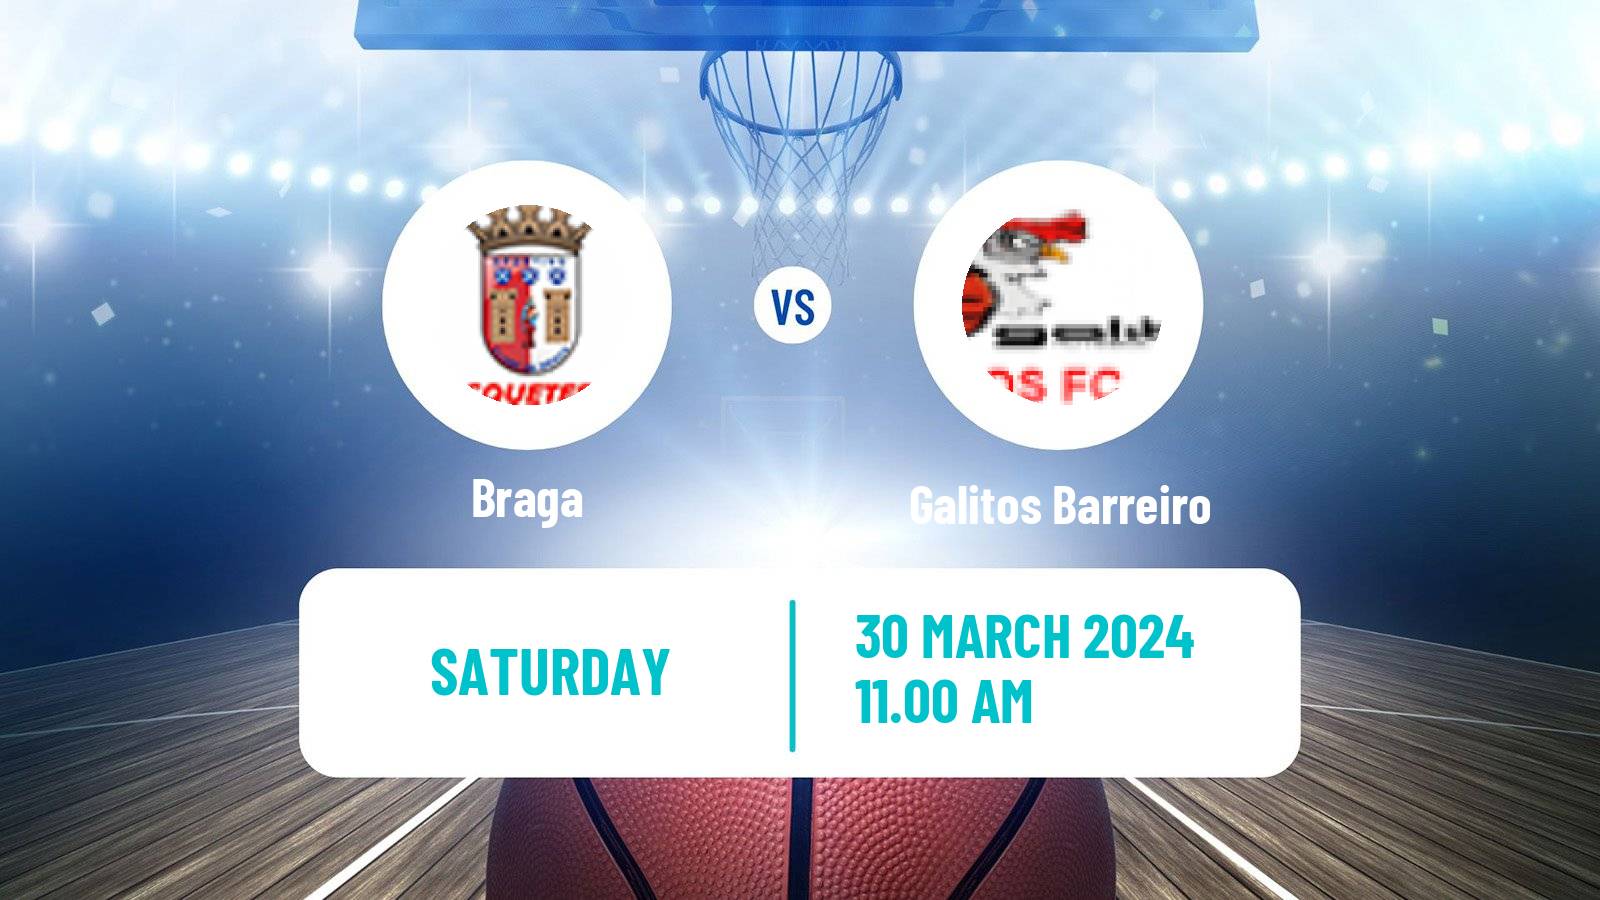 Basketball Portuguese Proliga Basketball Braga - Galitos Barreiro